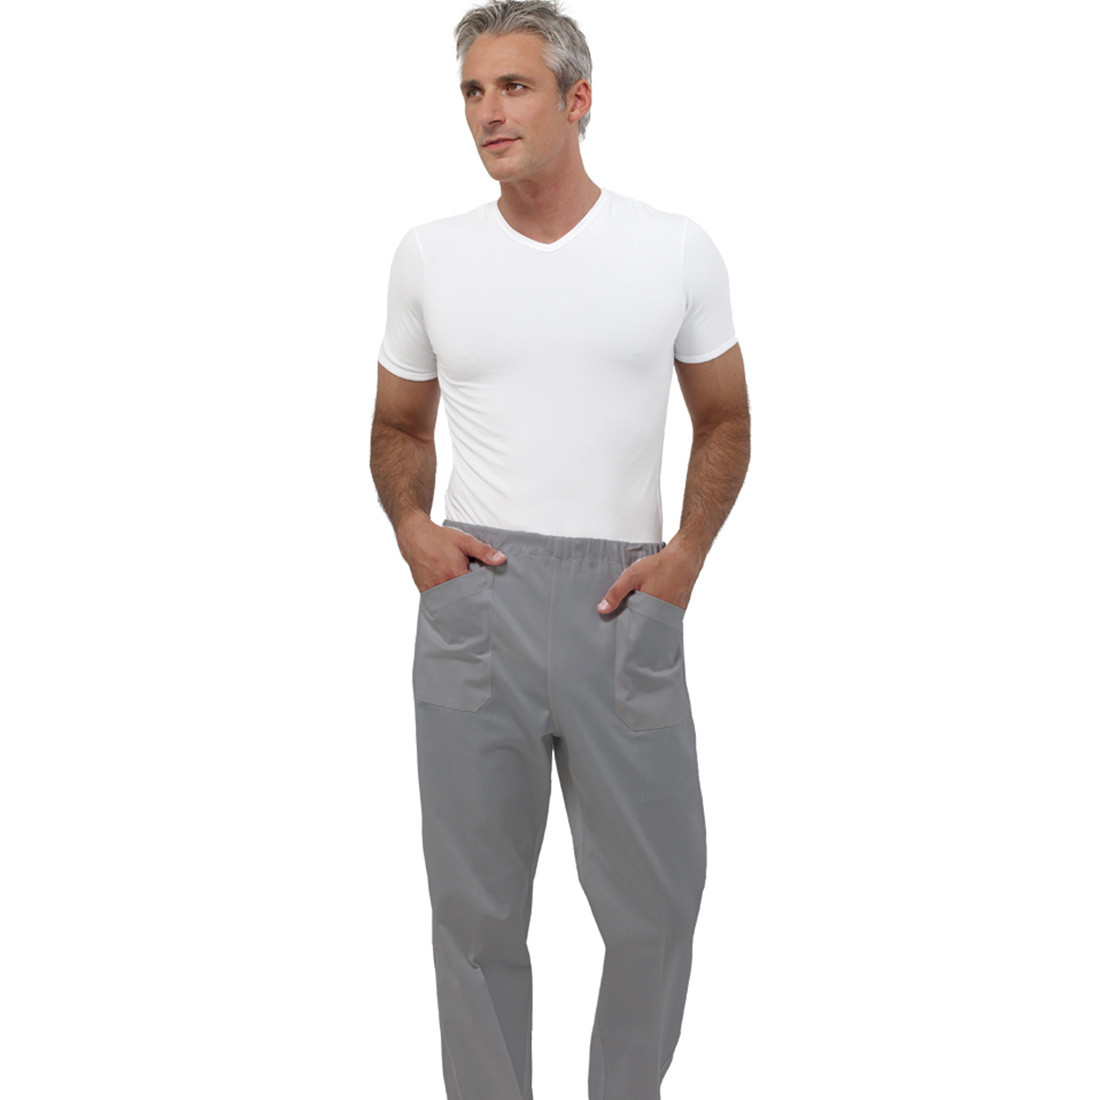 Pantalon médical STAR II unisex - Les vêtements de protection